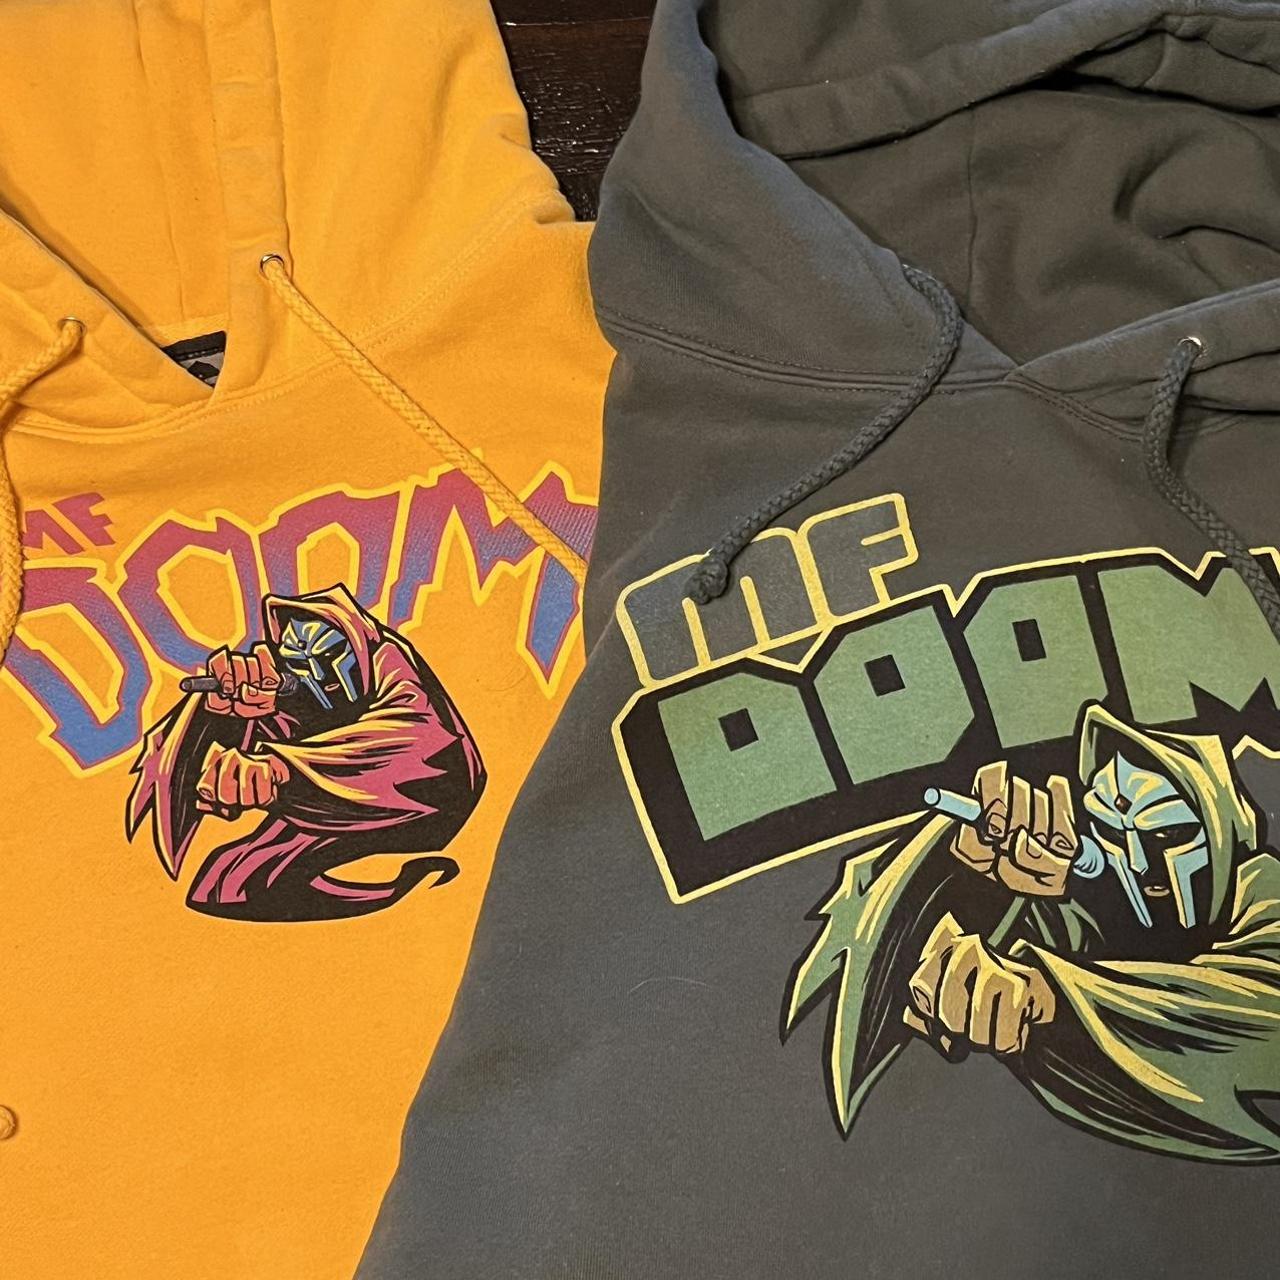 MF DOOM Anti Hero Hoodies XL & XL Both hoodies for... - Depop